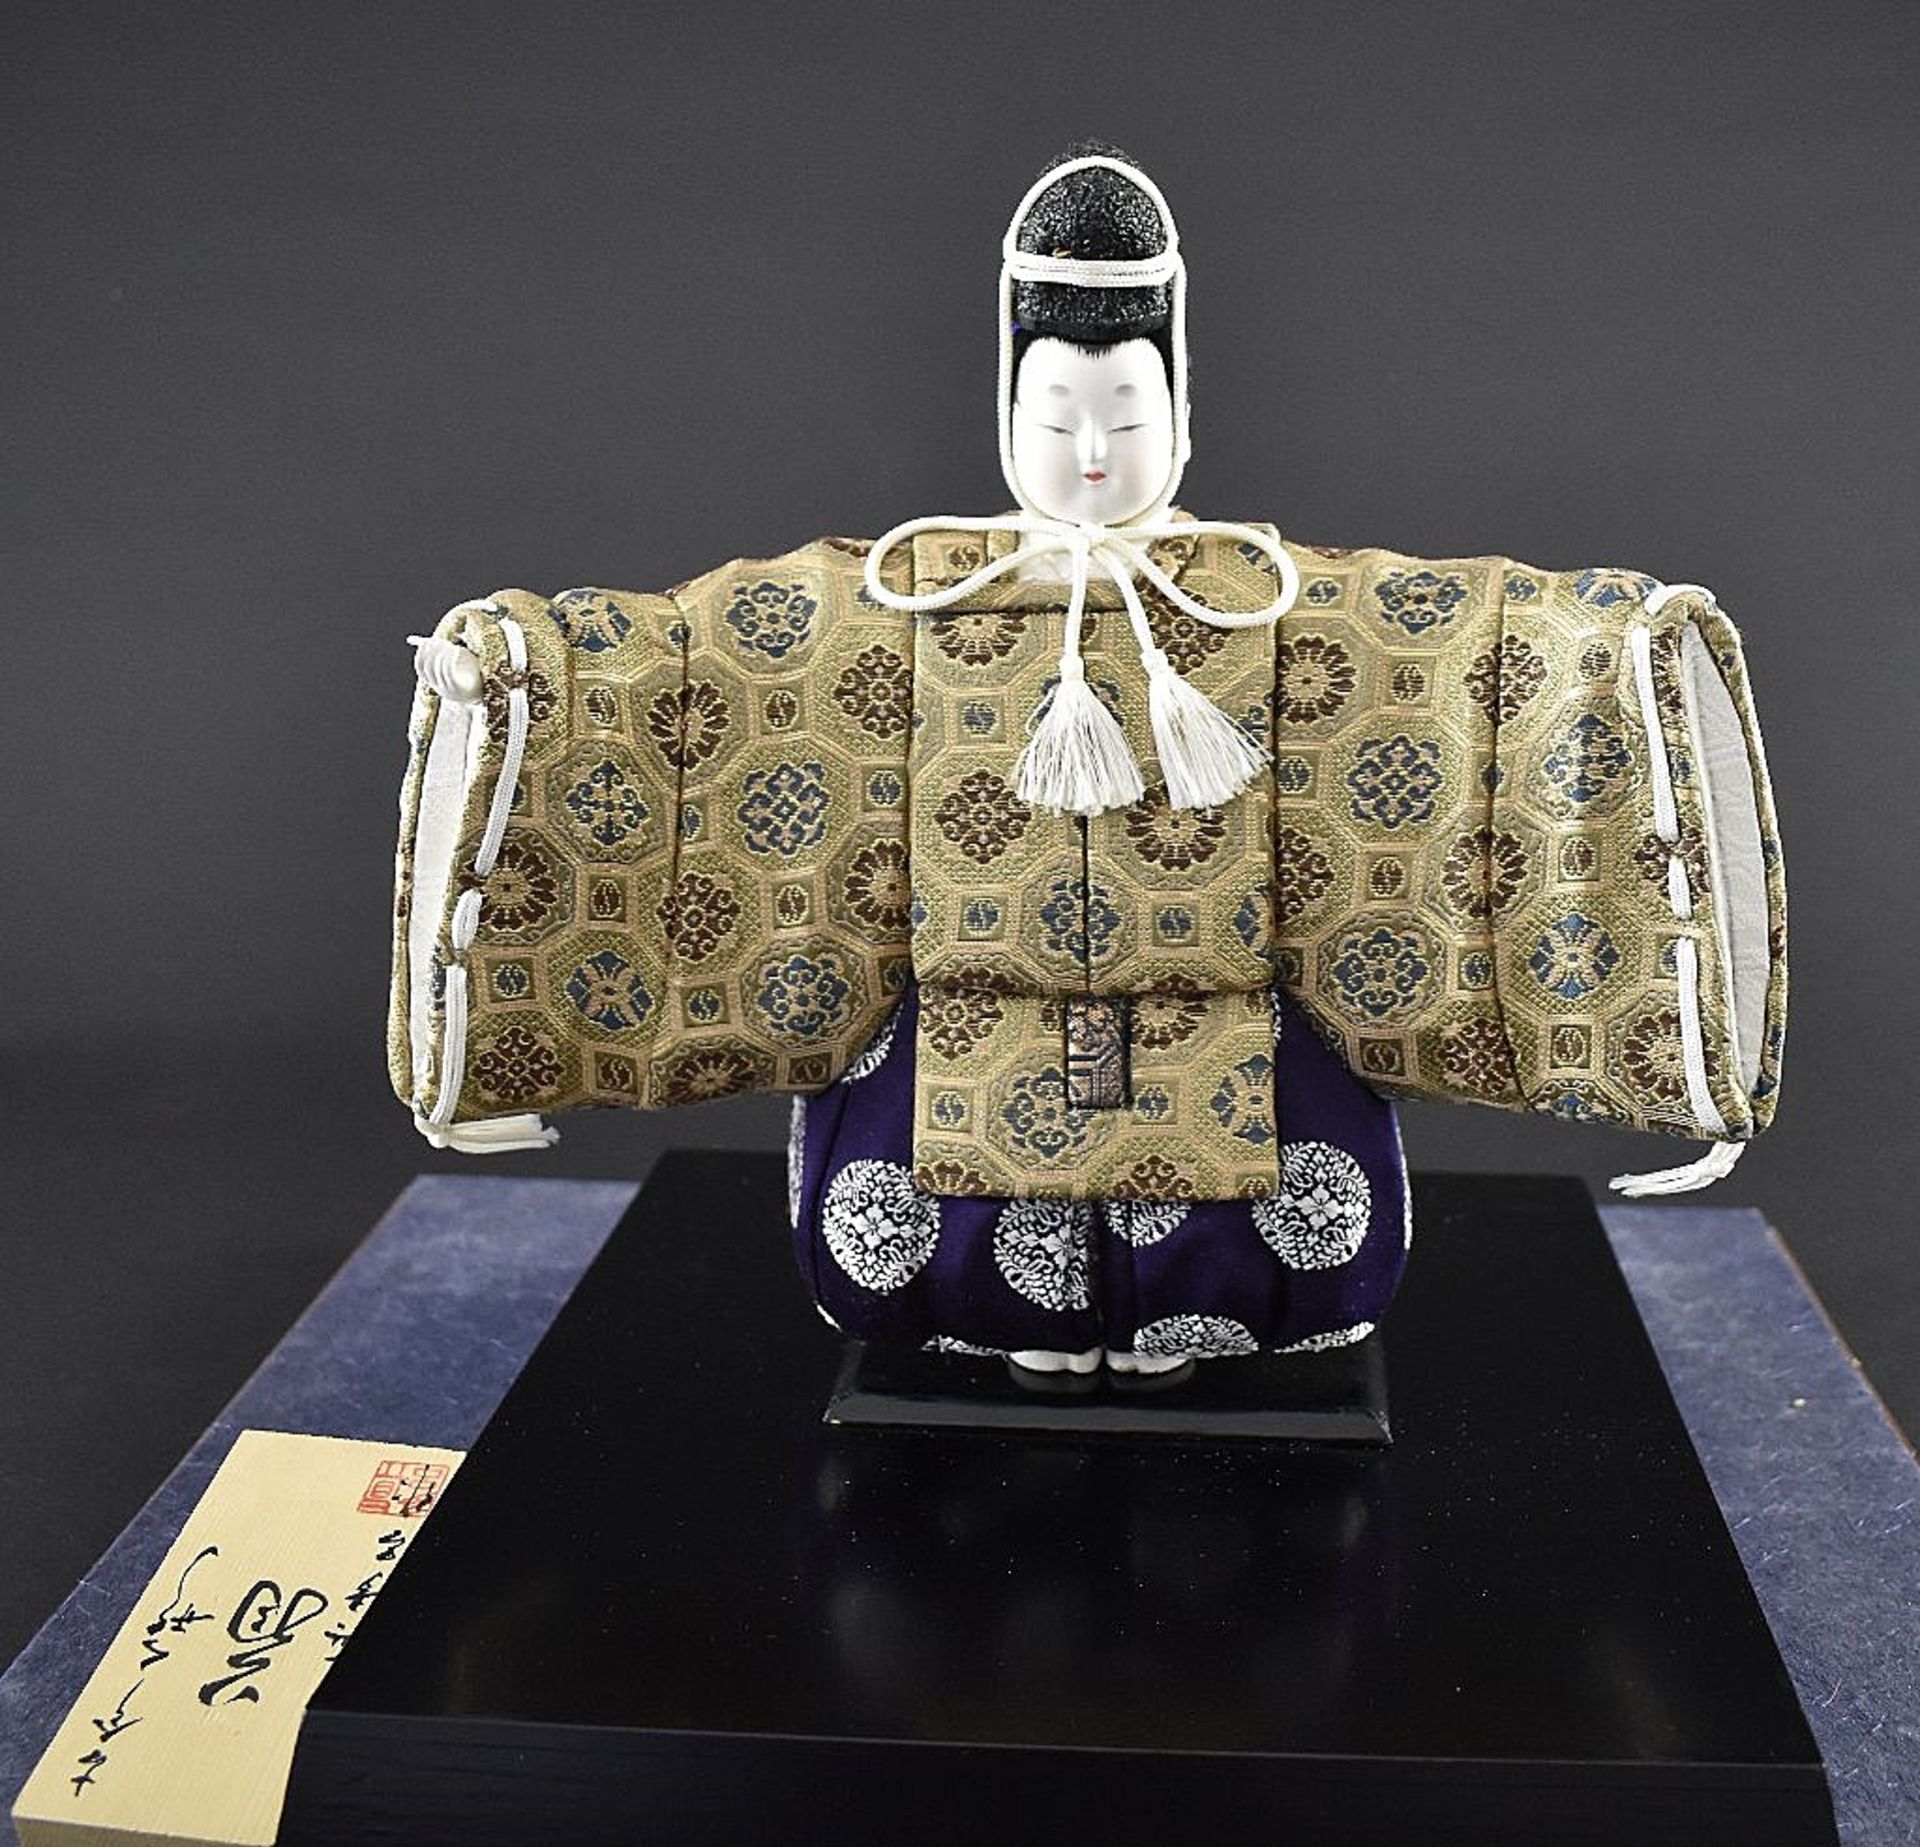 Japanische Puppe. Muschelkalkgesicht. Brokatgewand. H 27 cm. Im Glaskasten